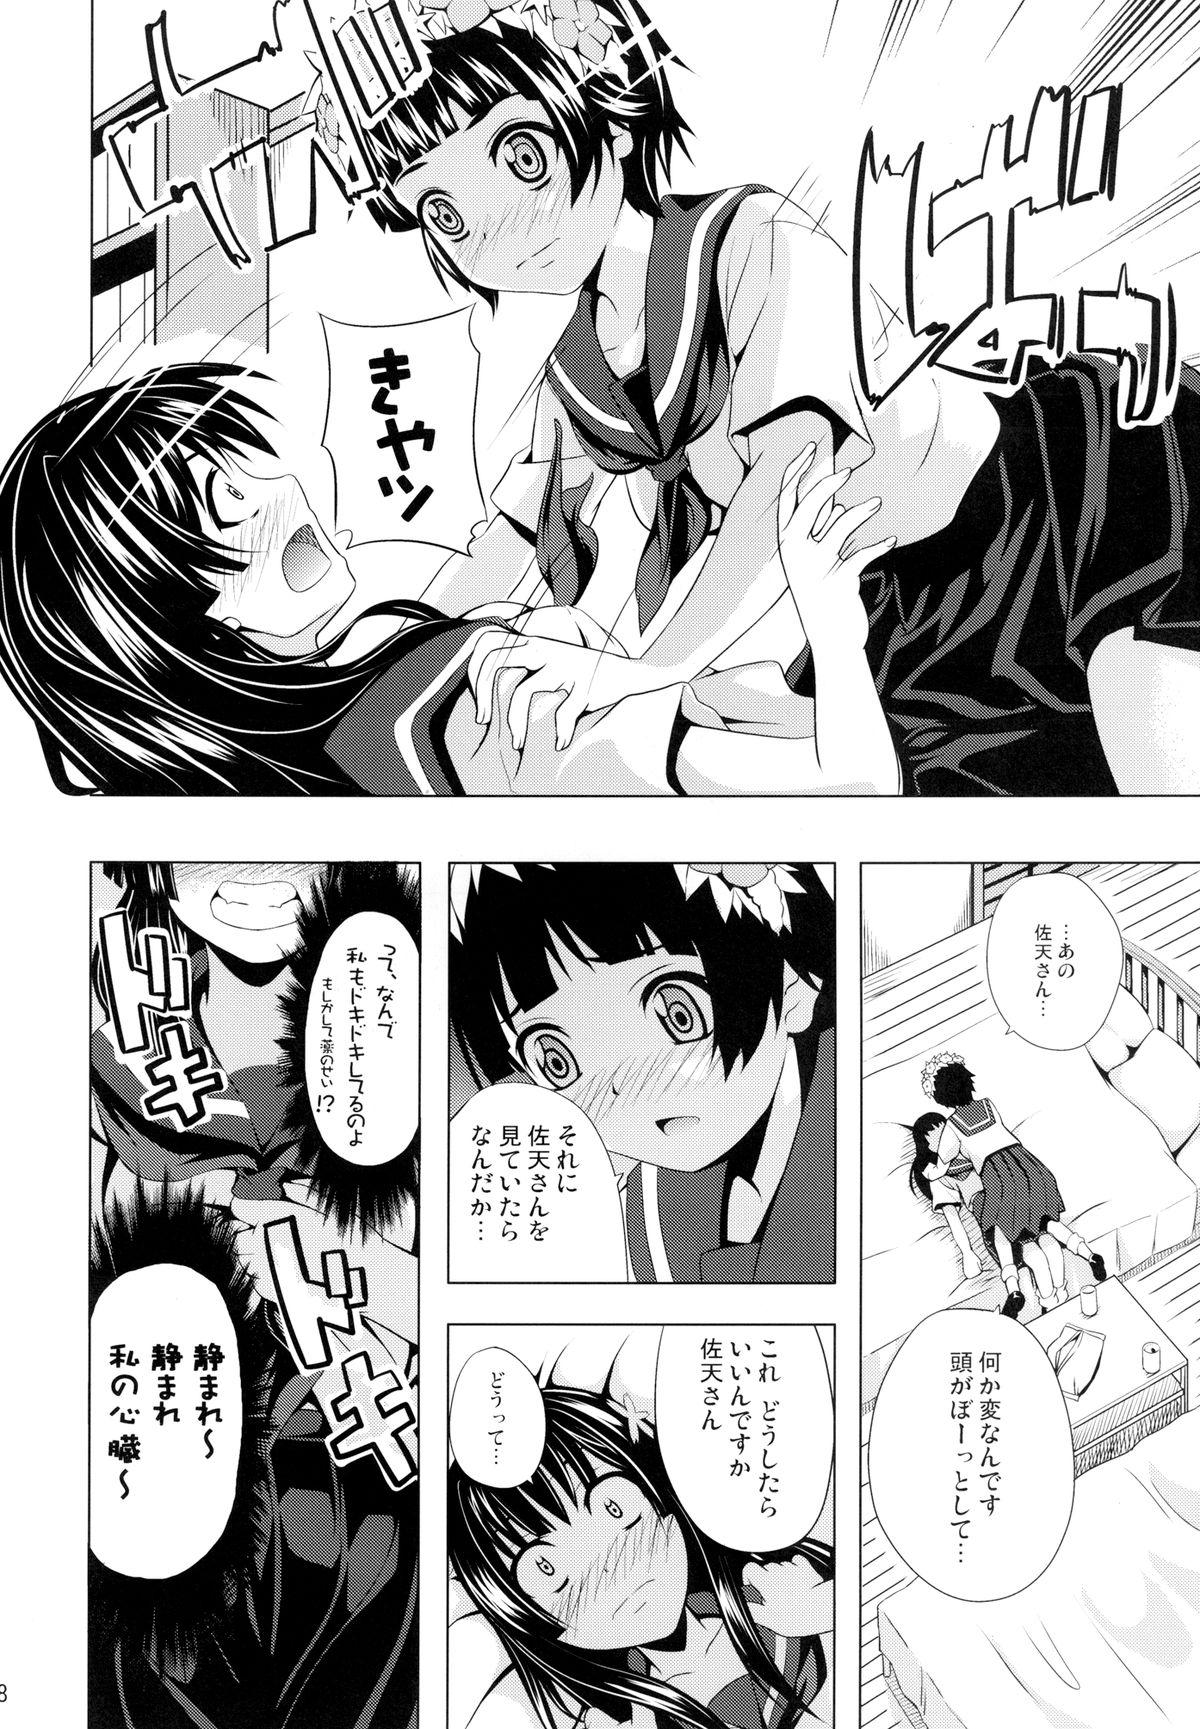 Pene Uiharu no U Saten no Sa - Toaru kagaku no railgun Fucked - Page 8